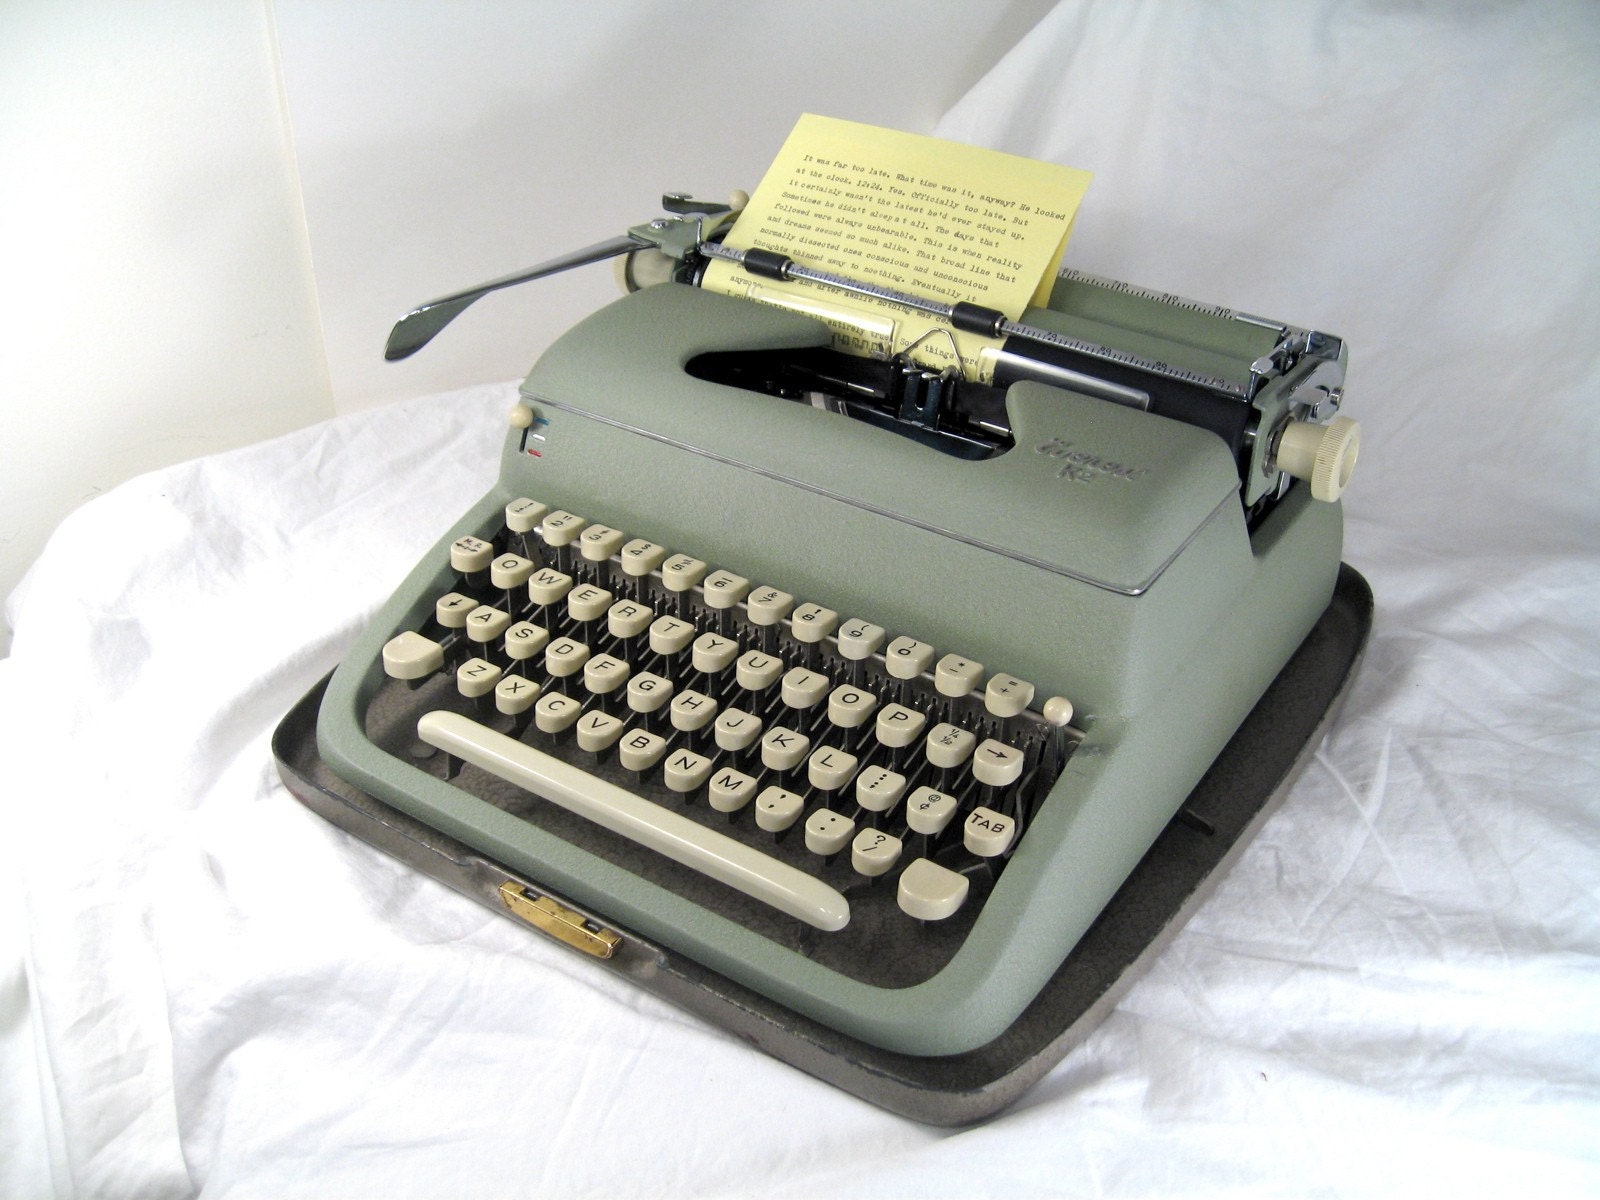 Kit Kittredge Typewriter